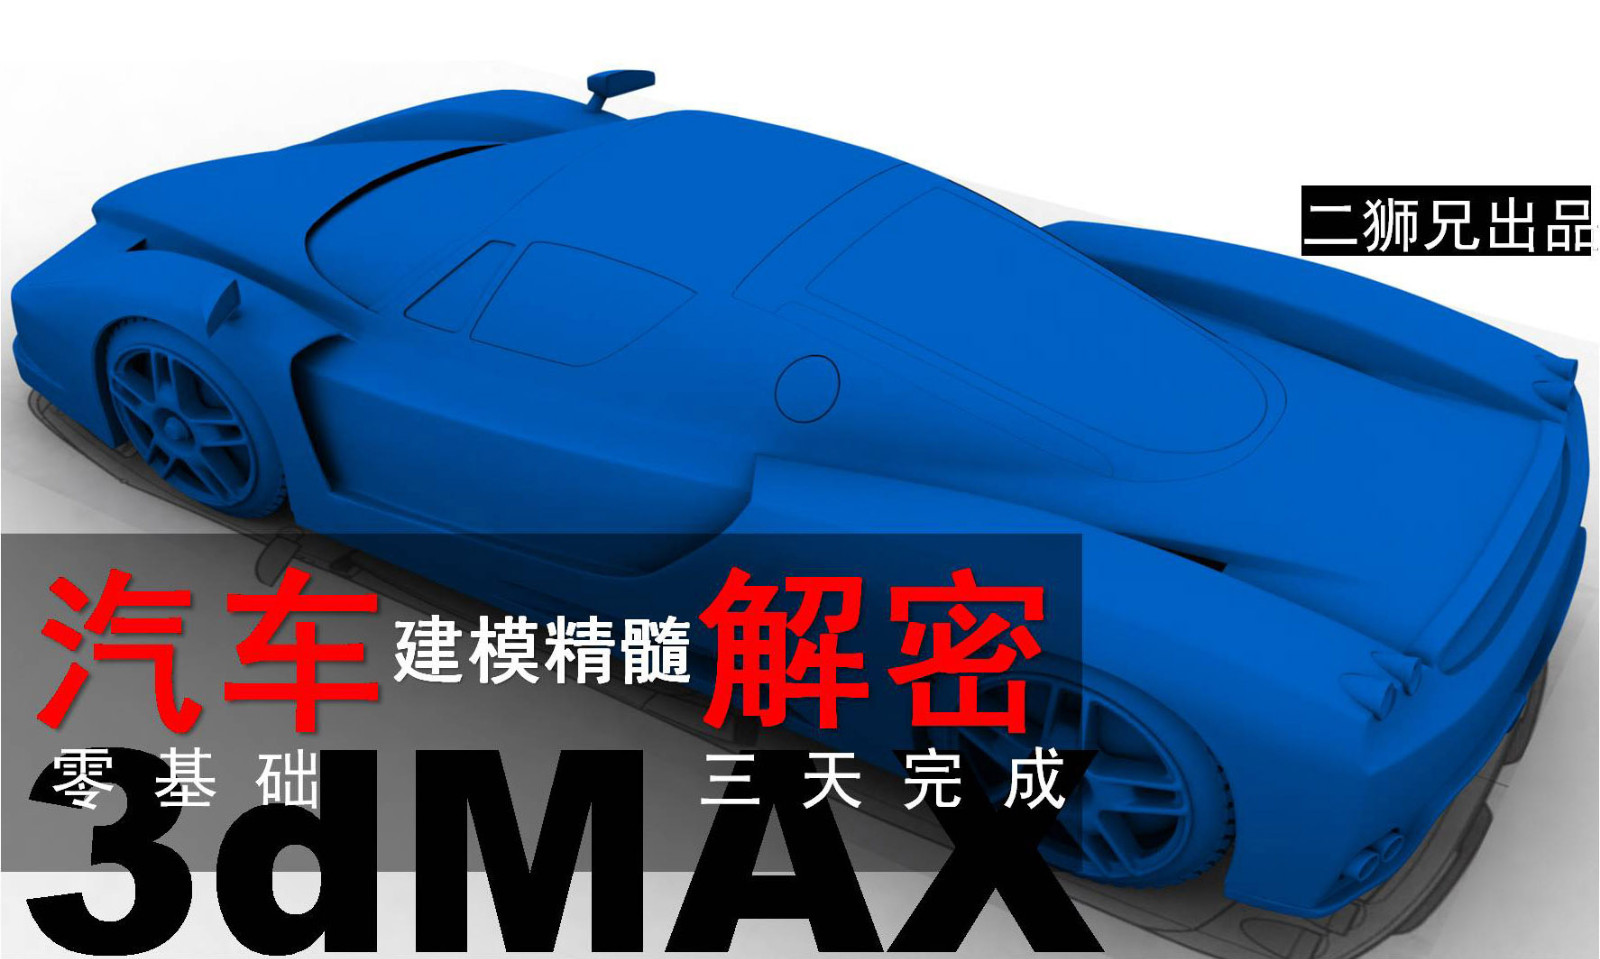 3dmax工业产品设计高级曲面-汽车建模视频教程-车尾部分